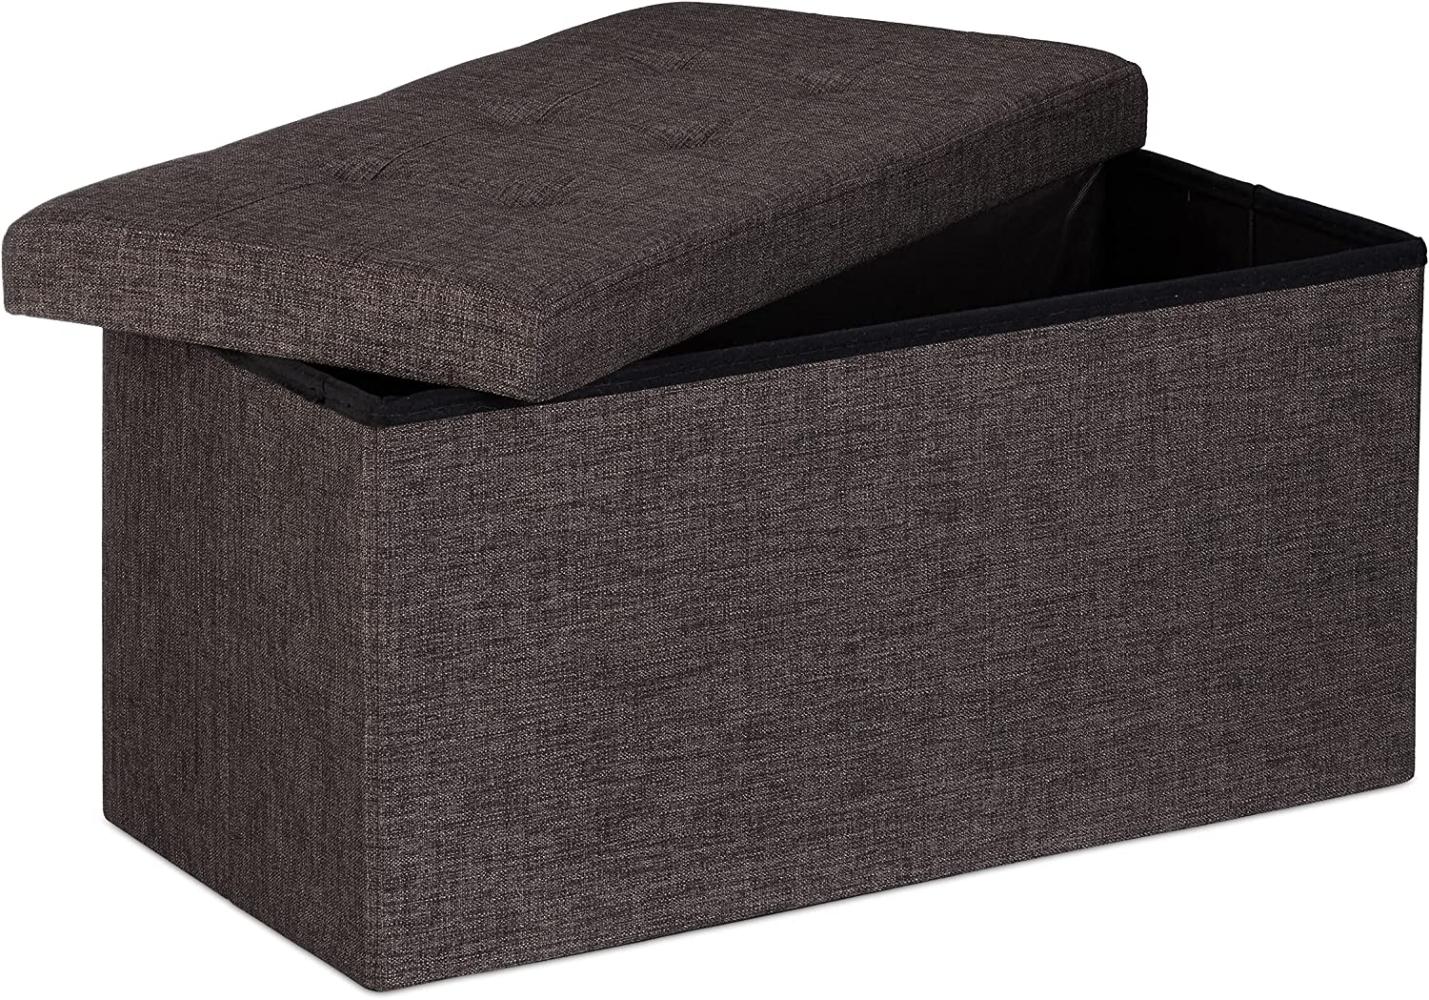 Relaxdays Faltbare Sitzbank XL, mit Stauraum, Sitzcube mit Fußablage, Sitzwürfel als Aufbewahrungsbox, 38x76x38cm, braun Bild 1